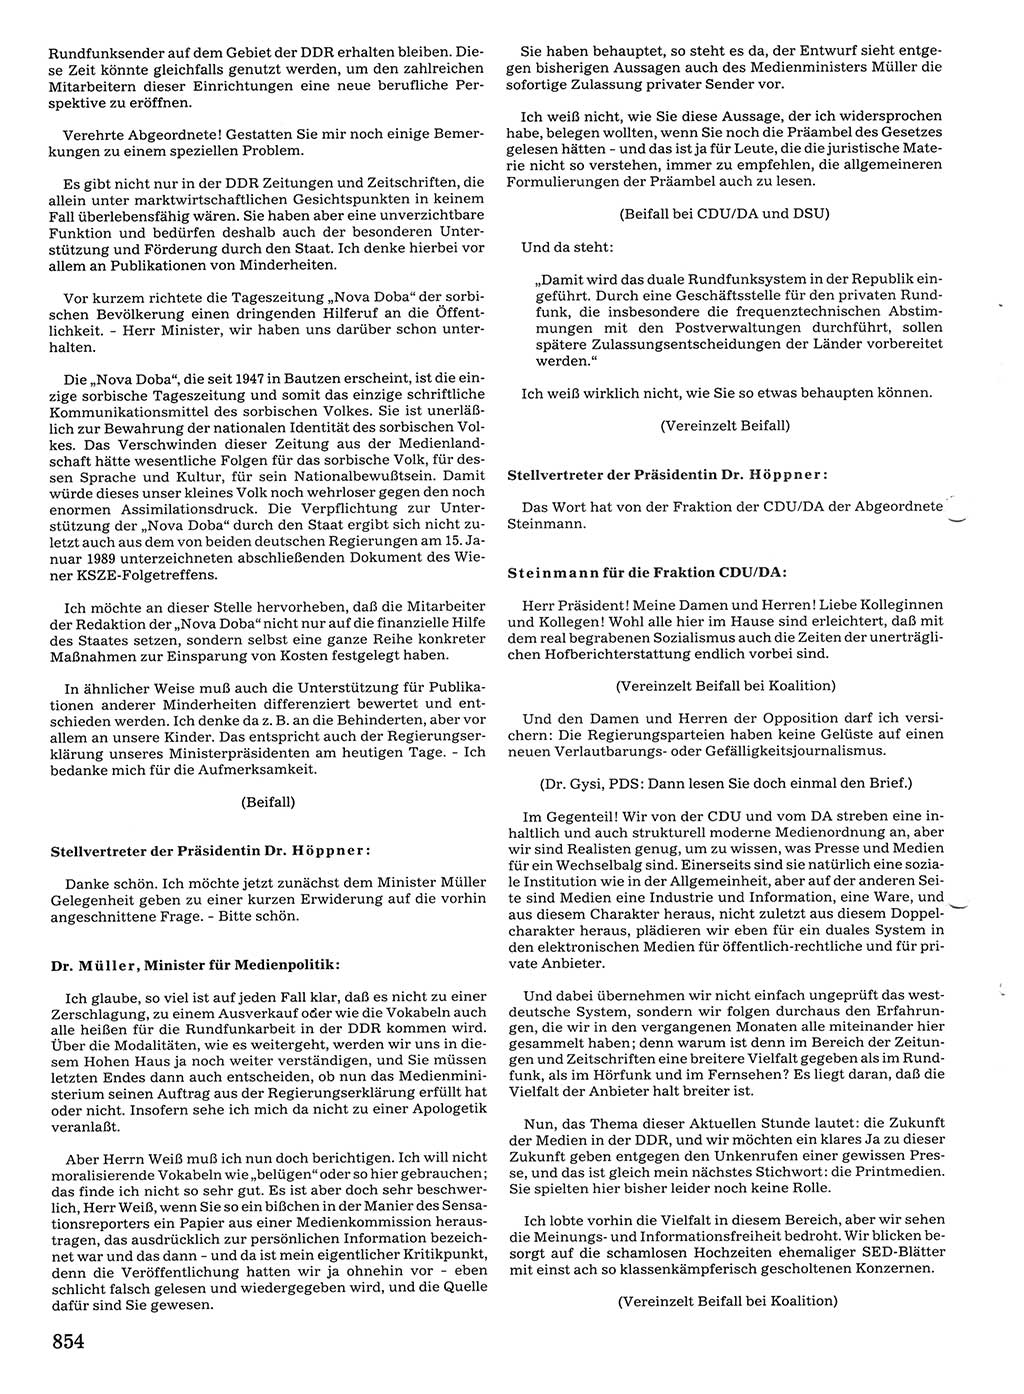 Tagungen der Volkskammer (VK) der Deutschen Demokratischen Republik (DDR), 10. Wahlperiode 1990, Seite 854 (VK. DDR 10. WP. 1990, Prot. Tg. 1-38, 5.4.-2.10.1990, S. 854)